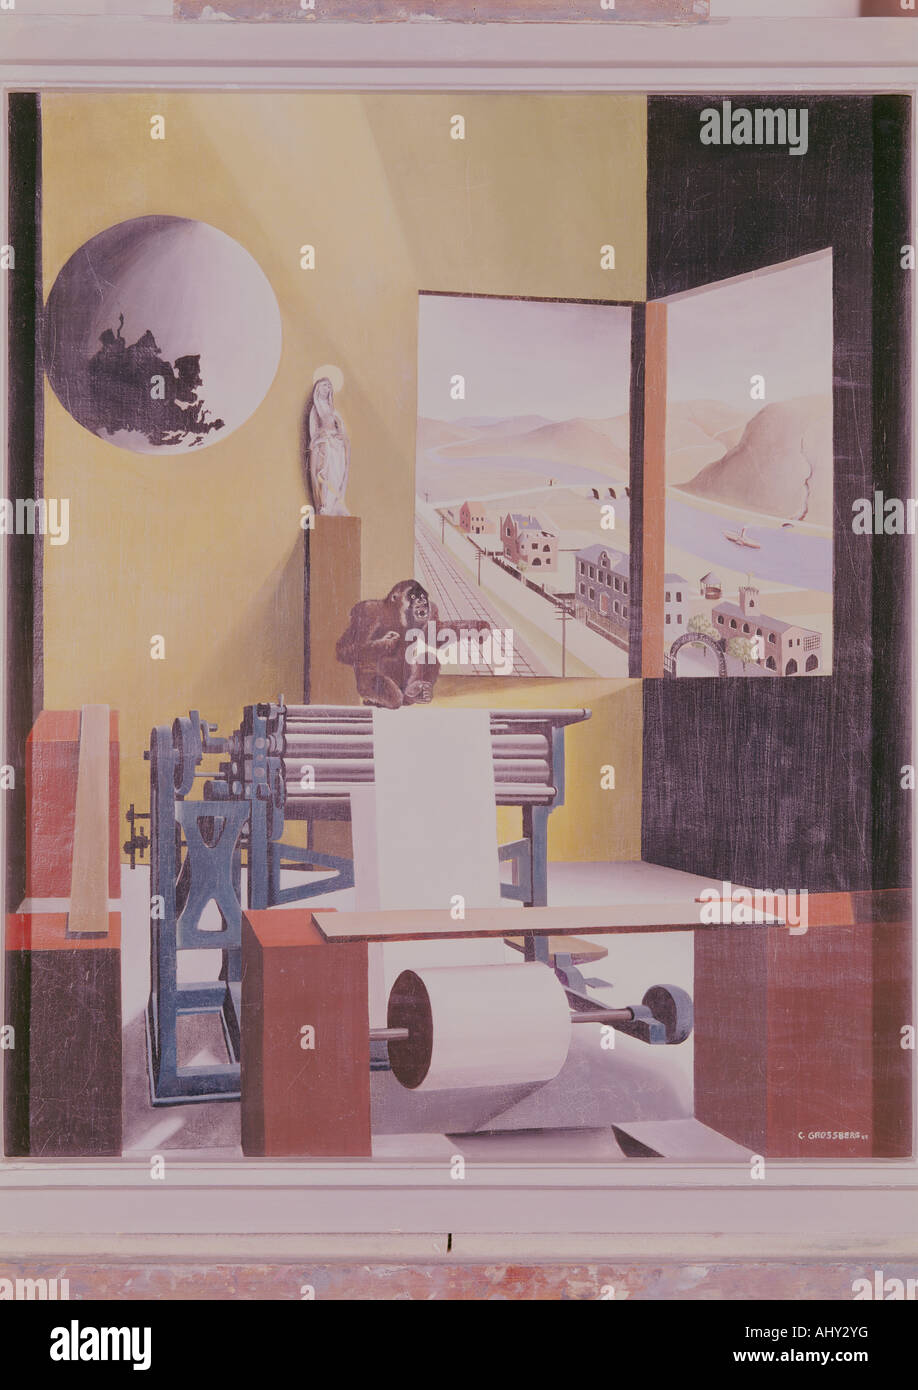 Beaux-arts, Grossberg, Carl, (1894 - 1940), peinture, "aschinensaal', 'machine' Hall, 1925, huile sur toile, von der Heydt museum, Wuppertal, Allemagne, l'artiste n'a pas d'auteur pour être effacé Banque D'Images